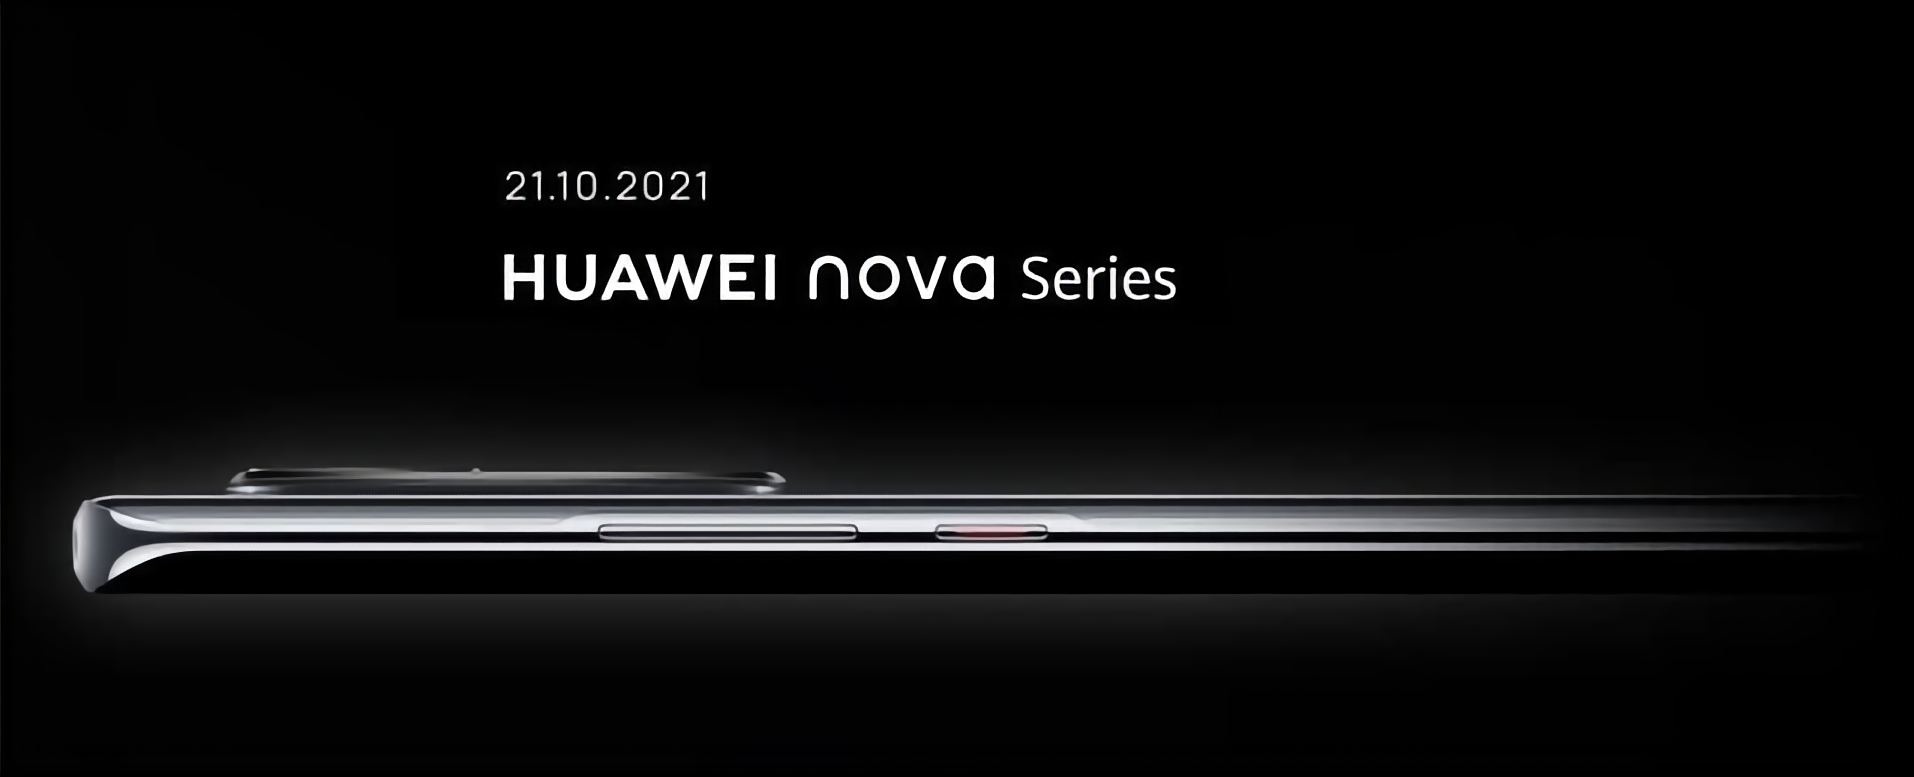 Huawei Nova 9 i Huawei Nova 8i pojawią się w Europie 21 października